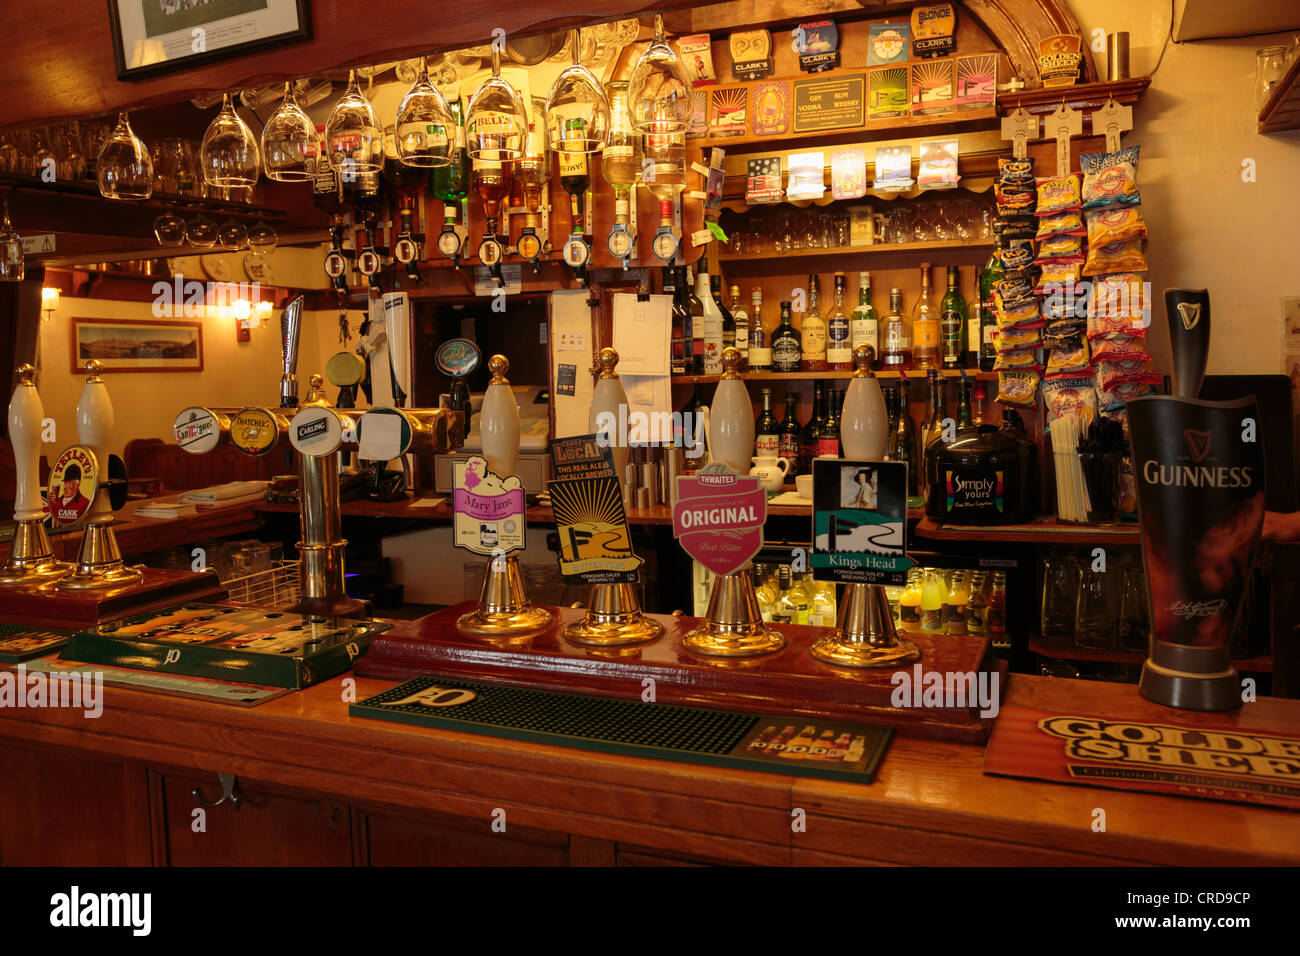 Kings Head Pub, Kettlewell, Yorkshire. Un pub anglais traditionnel qui sert des repas et de la vraie bière Banque D'Images